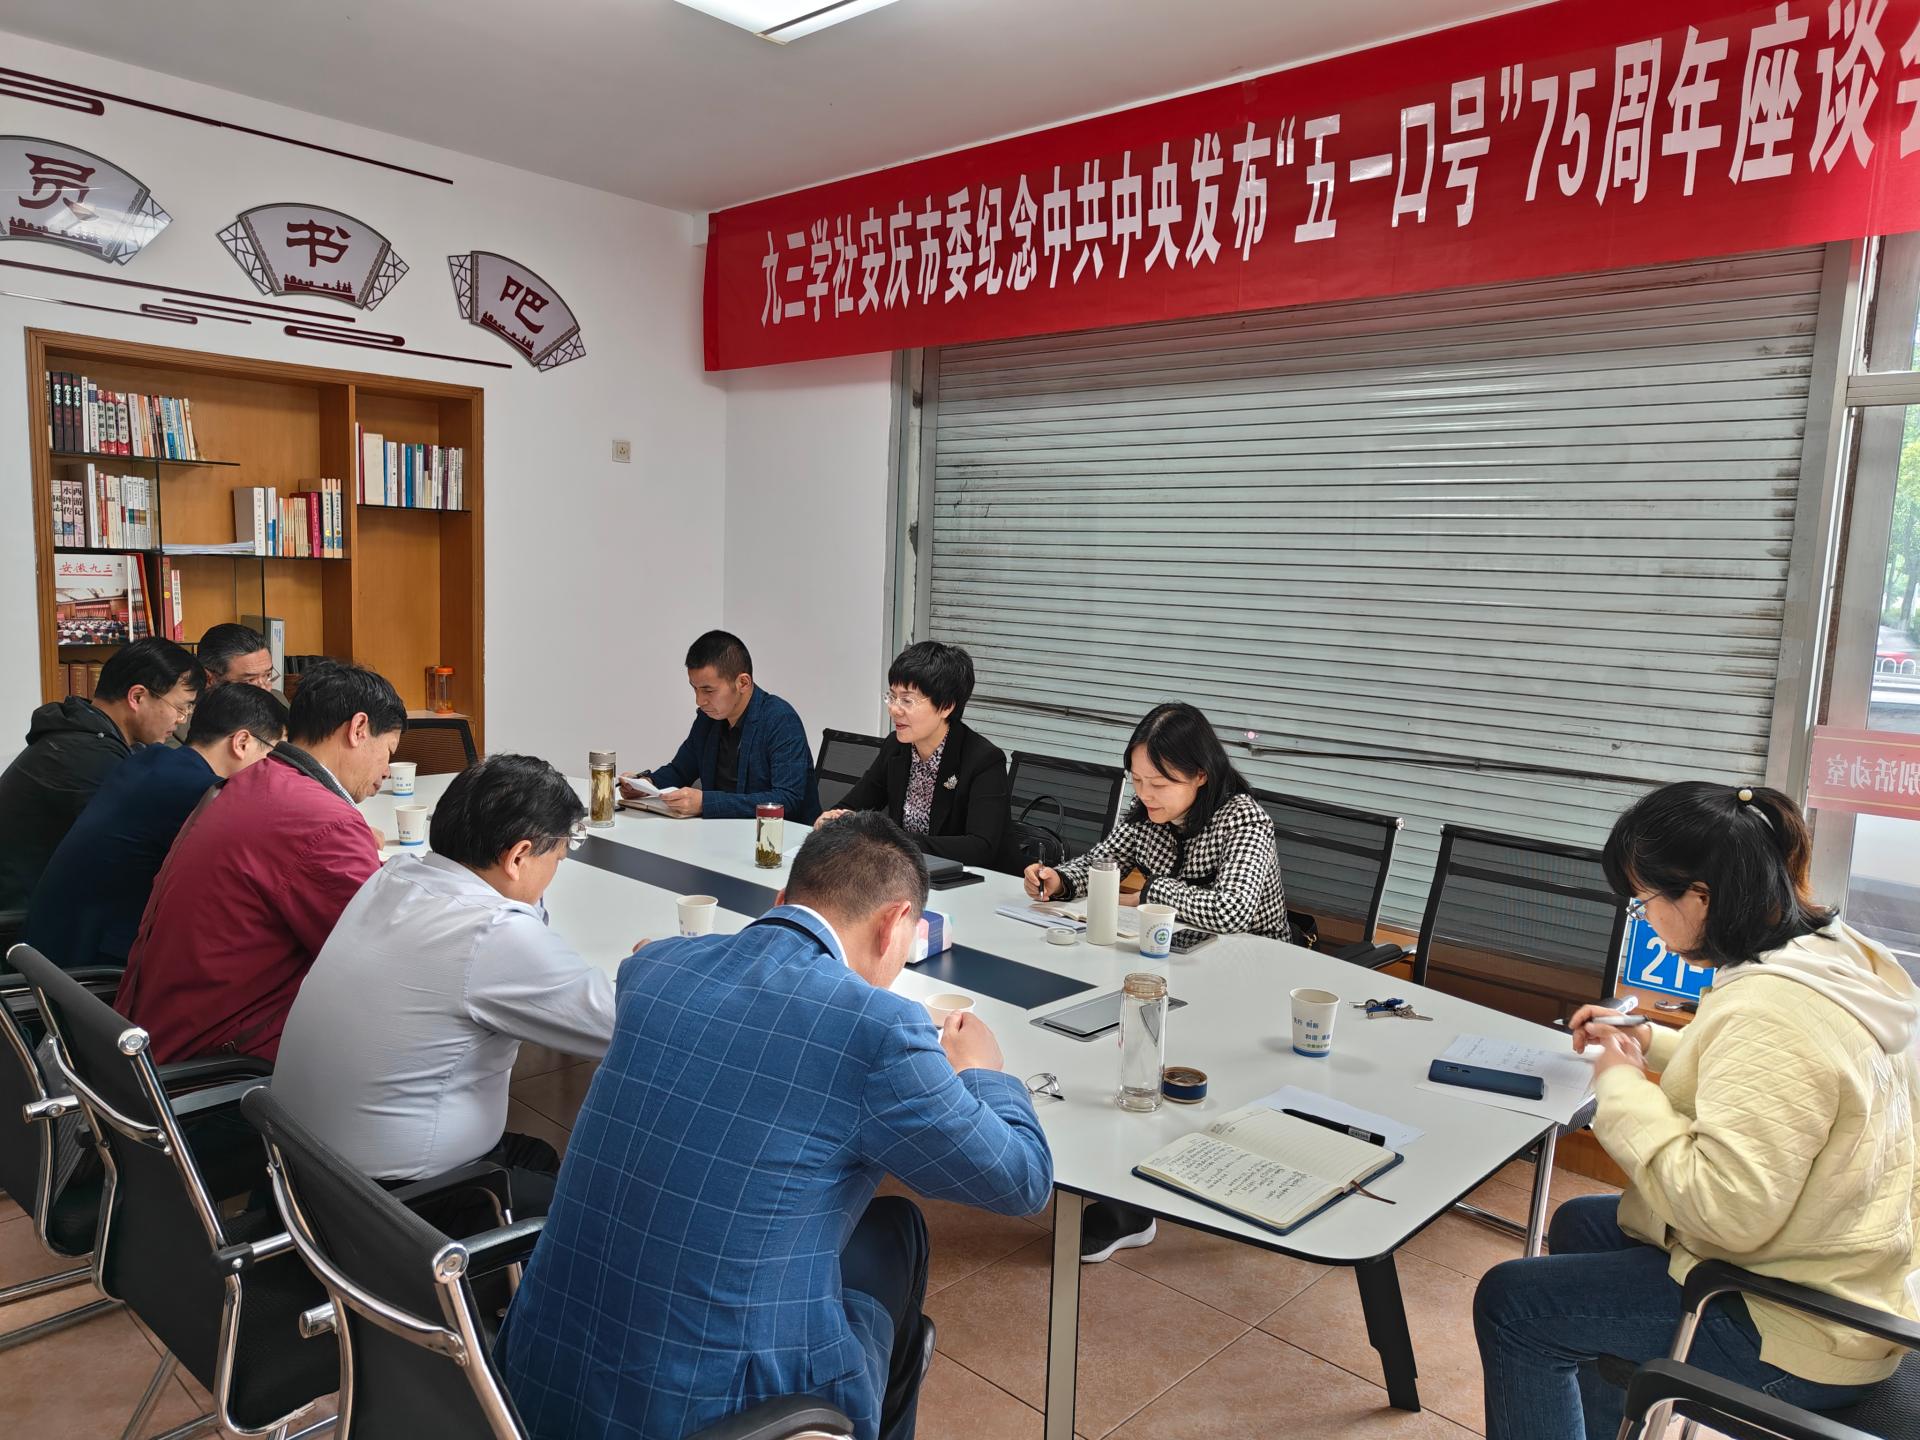 九三学社安庆市委召开纪念“五一口号” 发布75周年座谈会